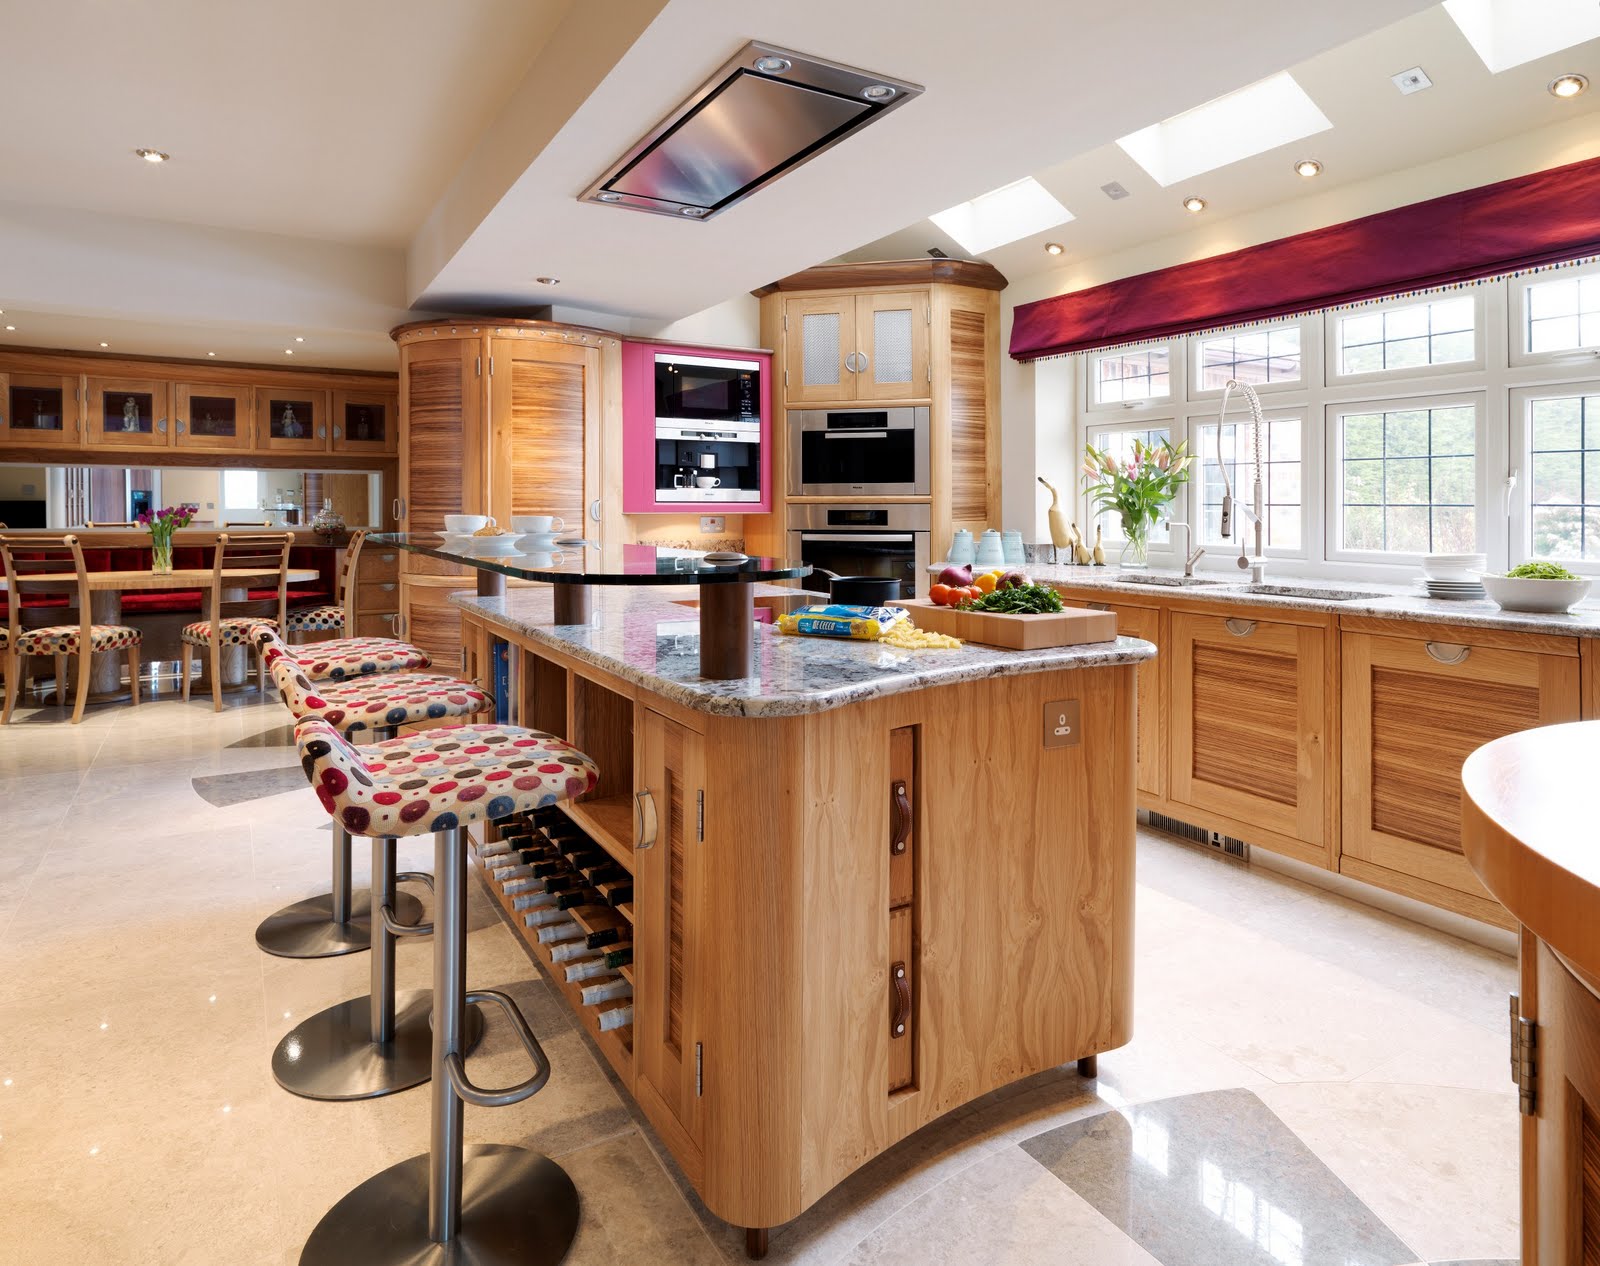 kitchen interior design using wood